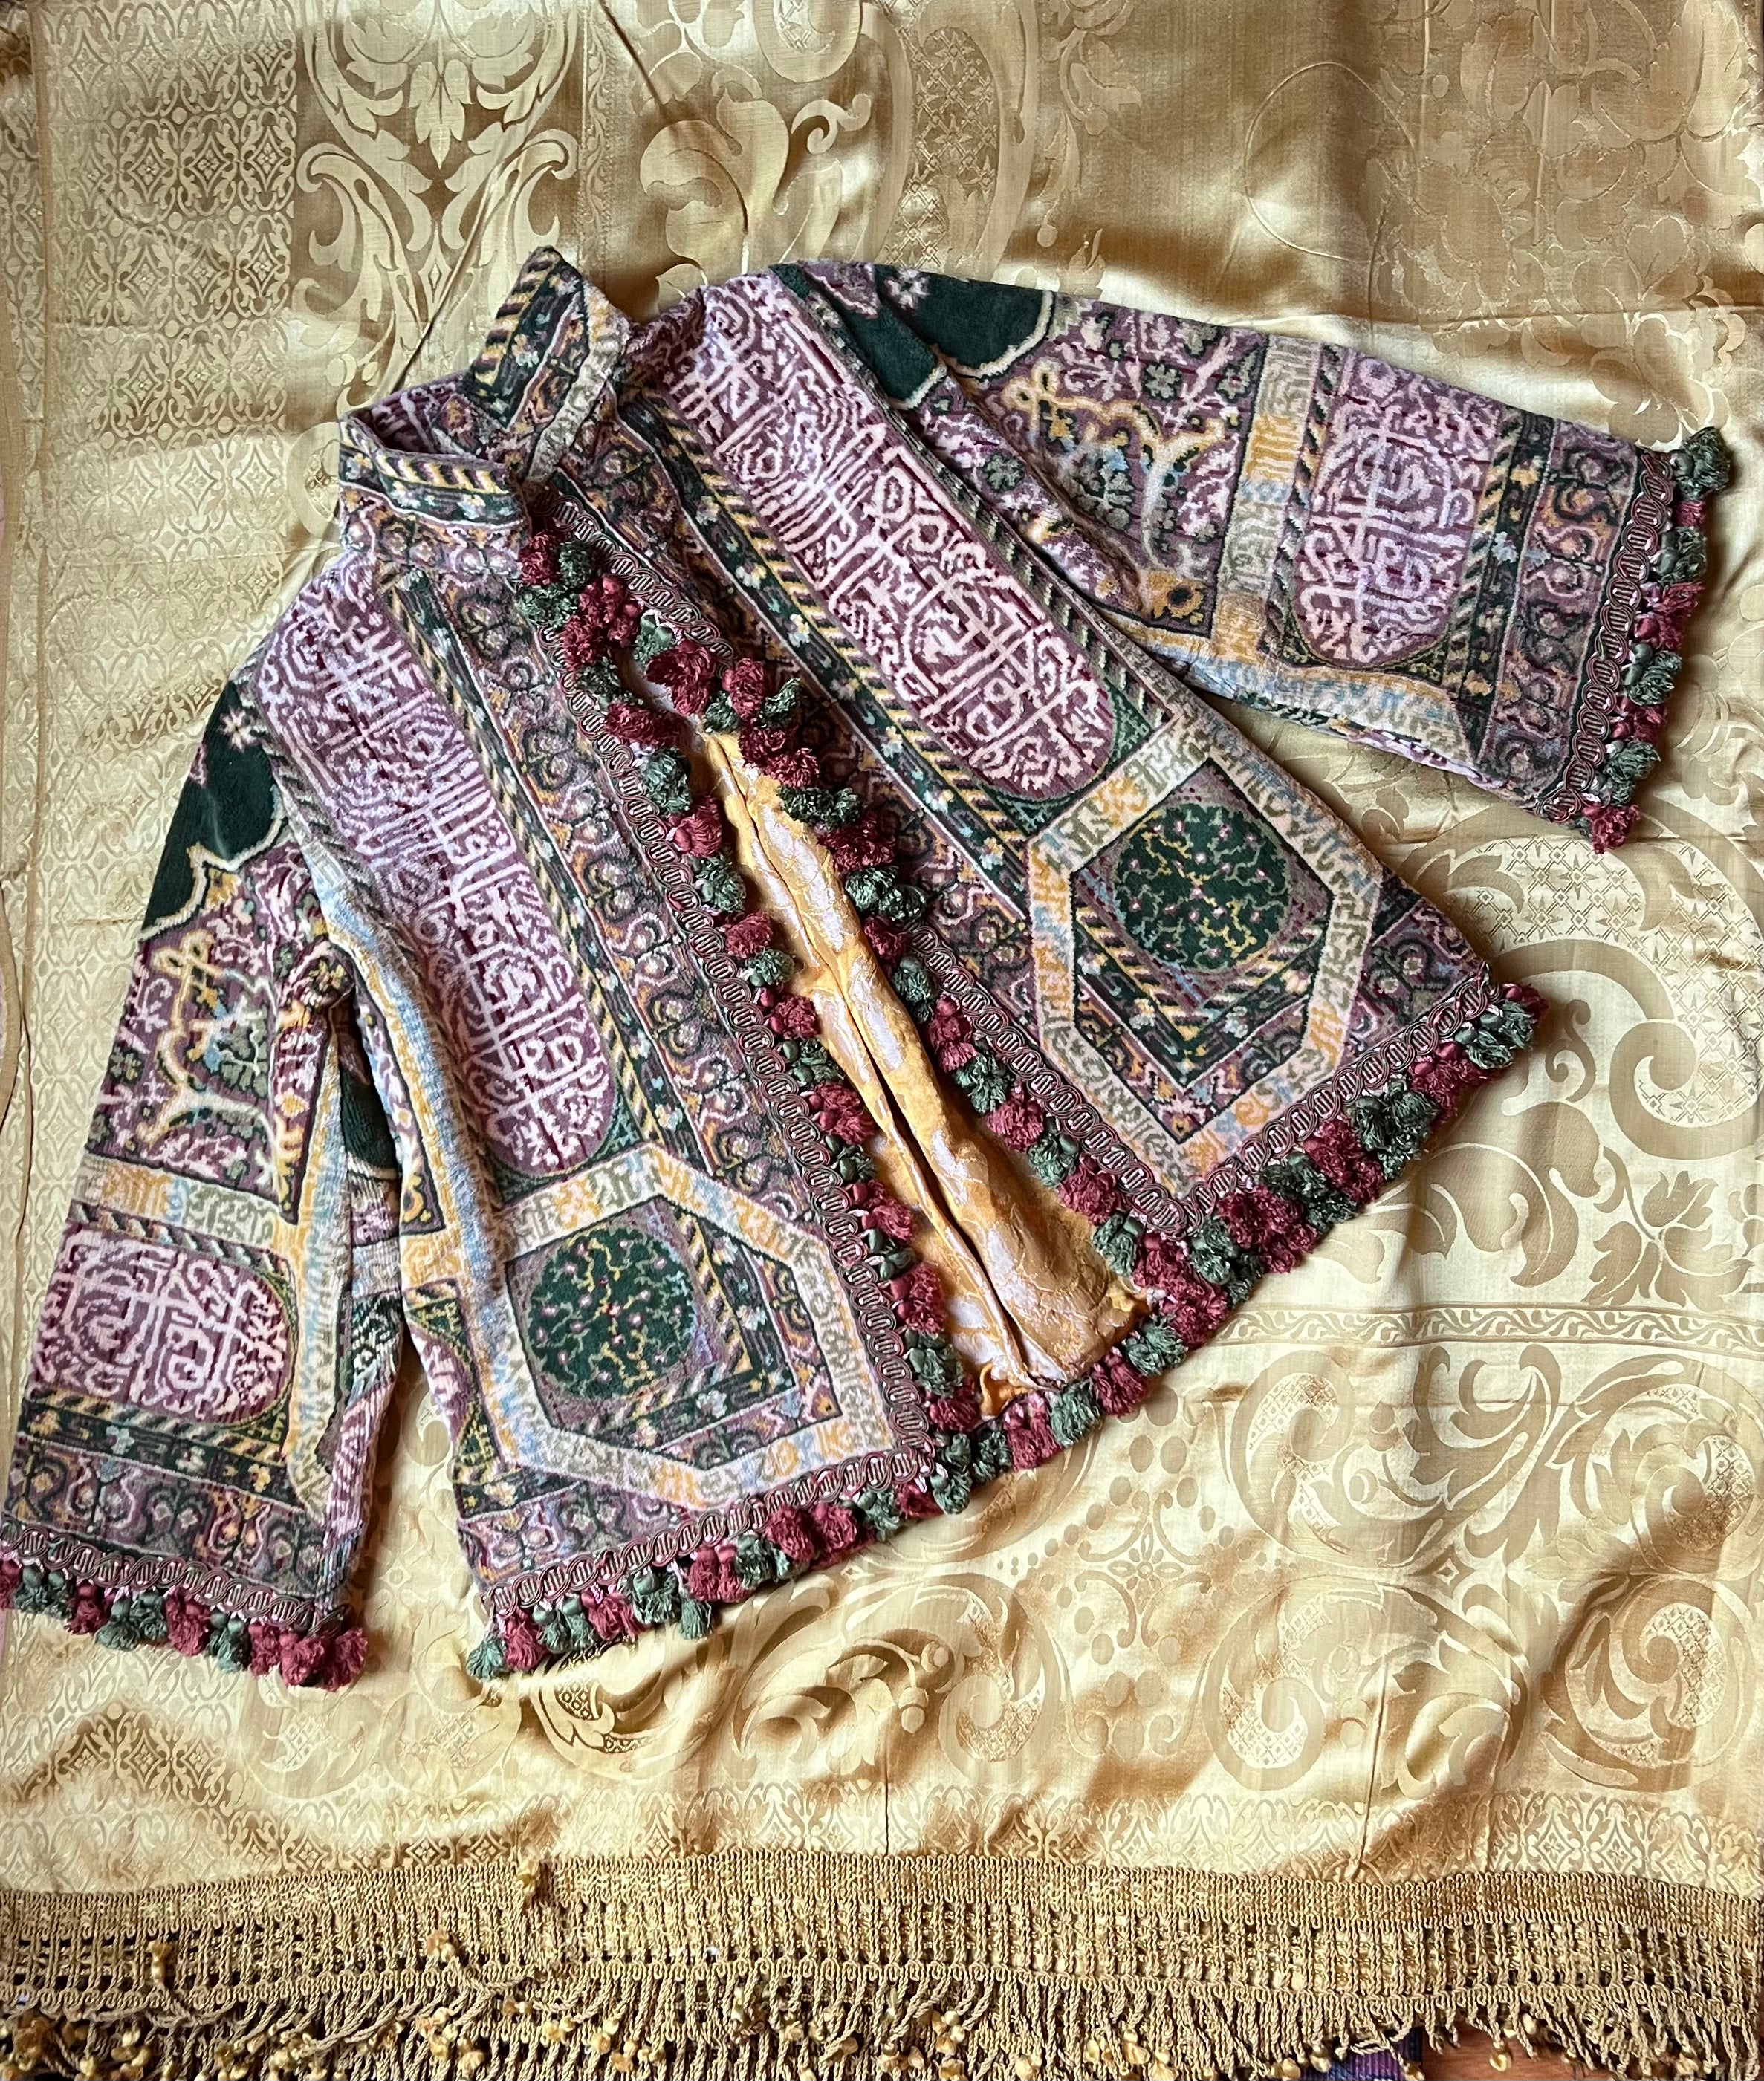 Vintage Kimono Jacket with PomPoms